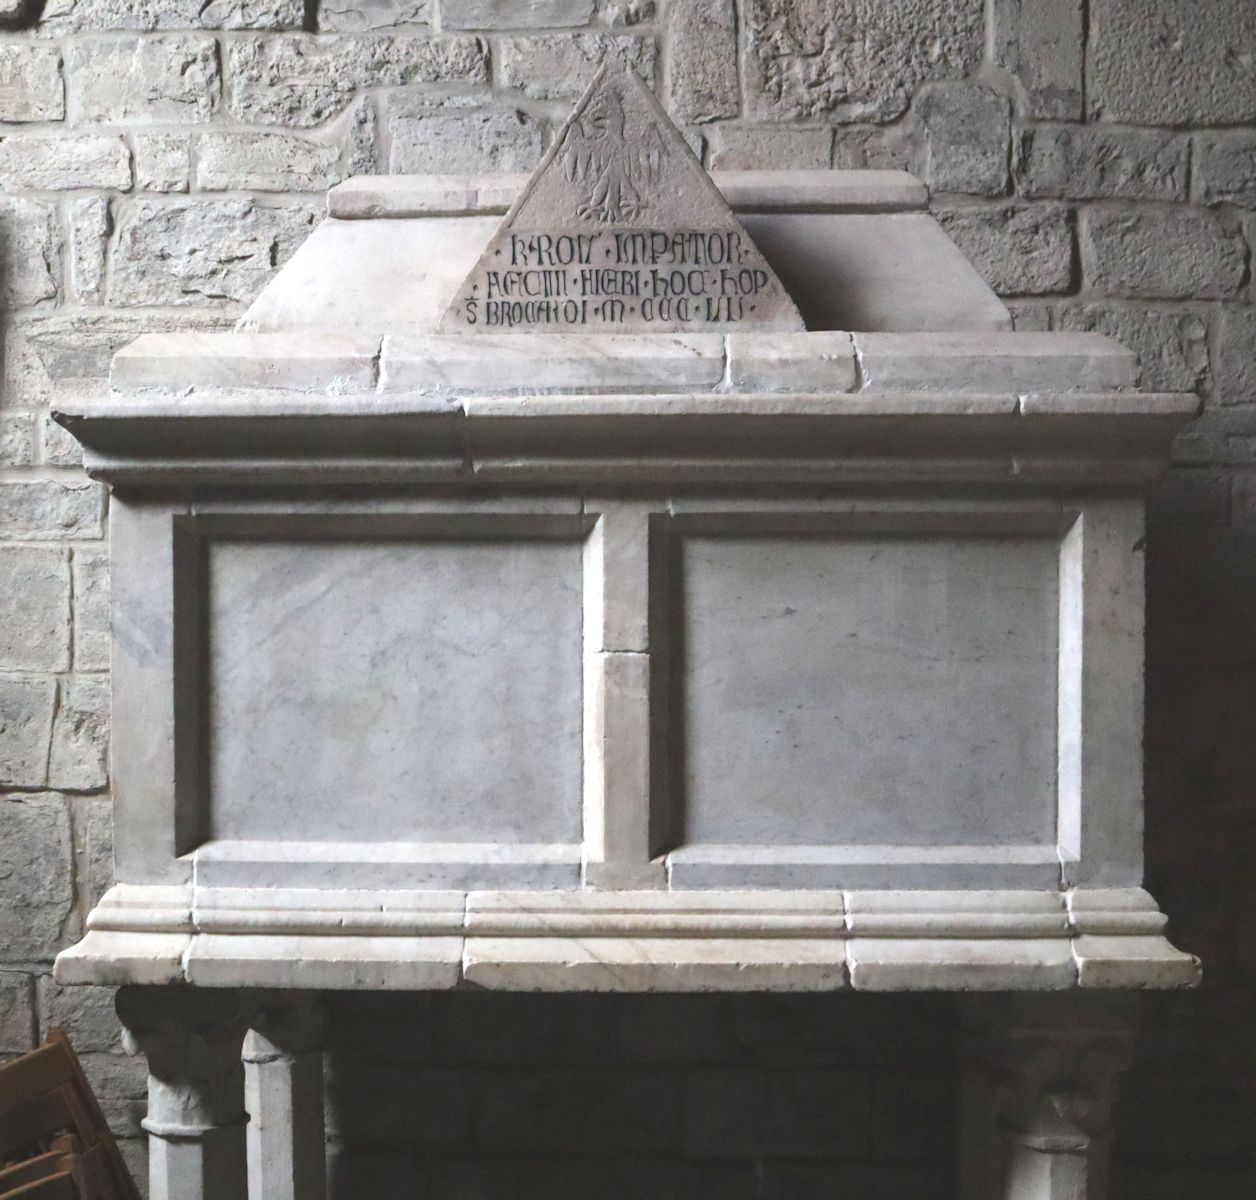 Burkards Sarkophag in der Pfarrkirche in Berceto